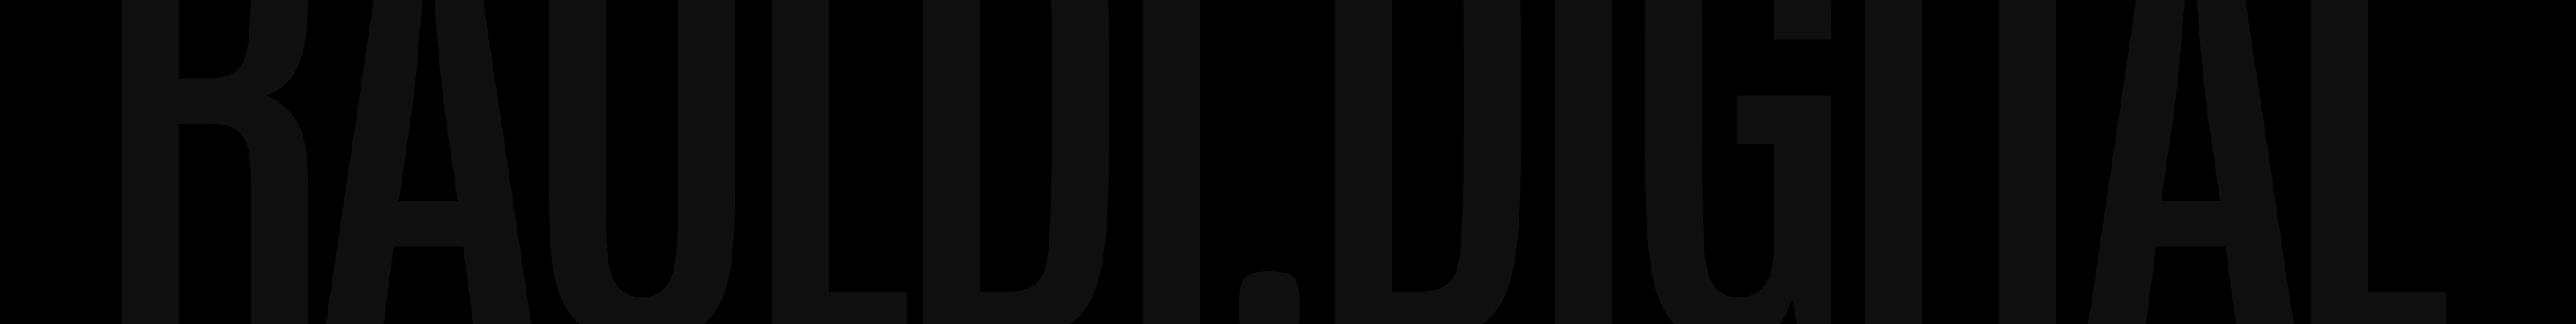 Rauldi Digital's profile banner